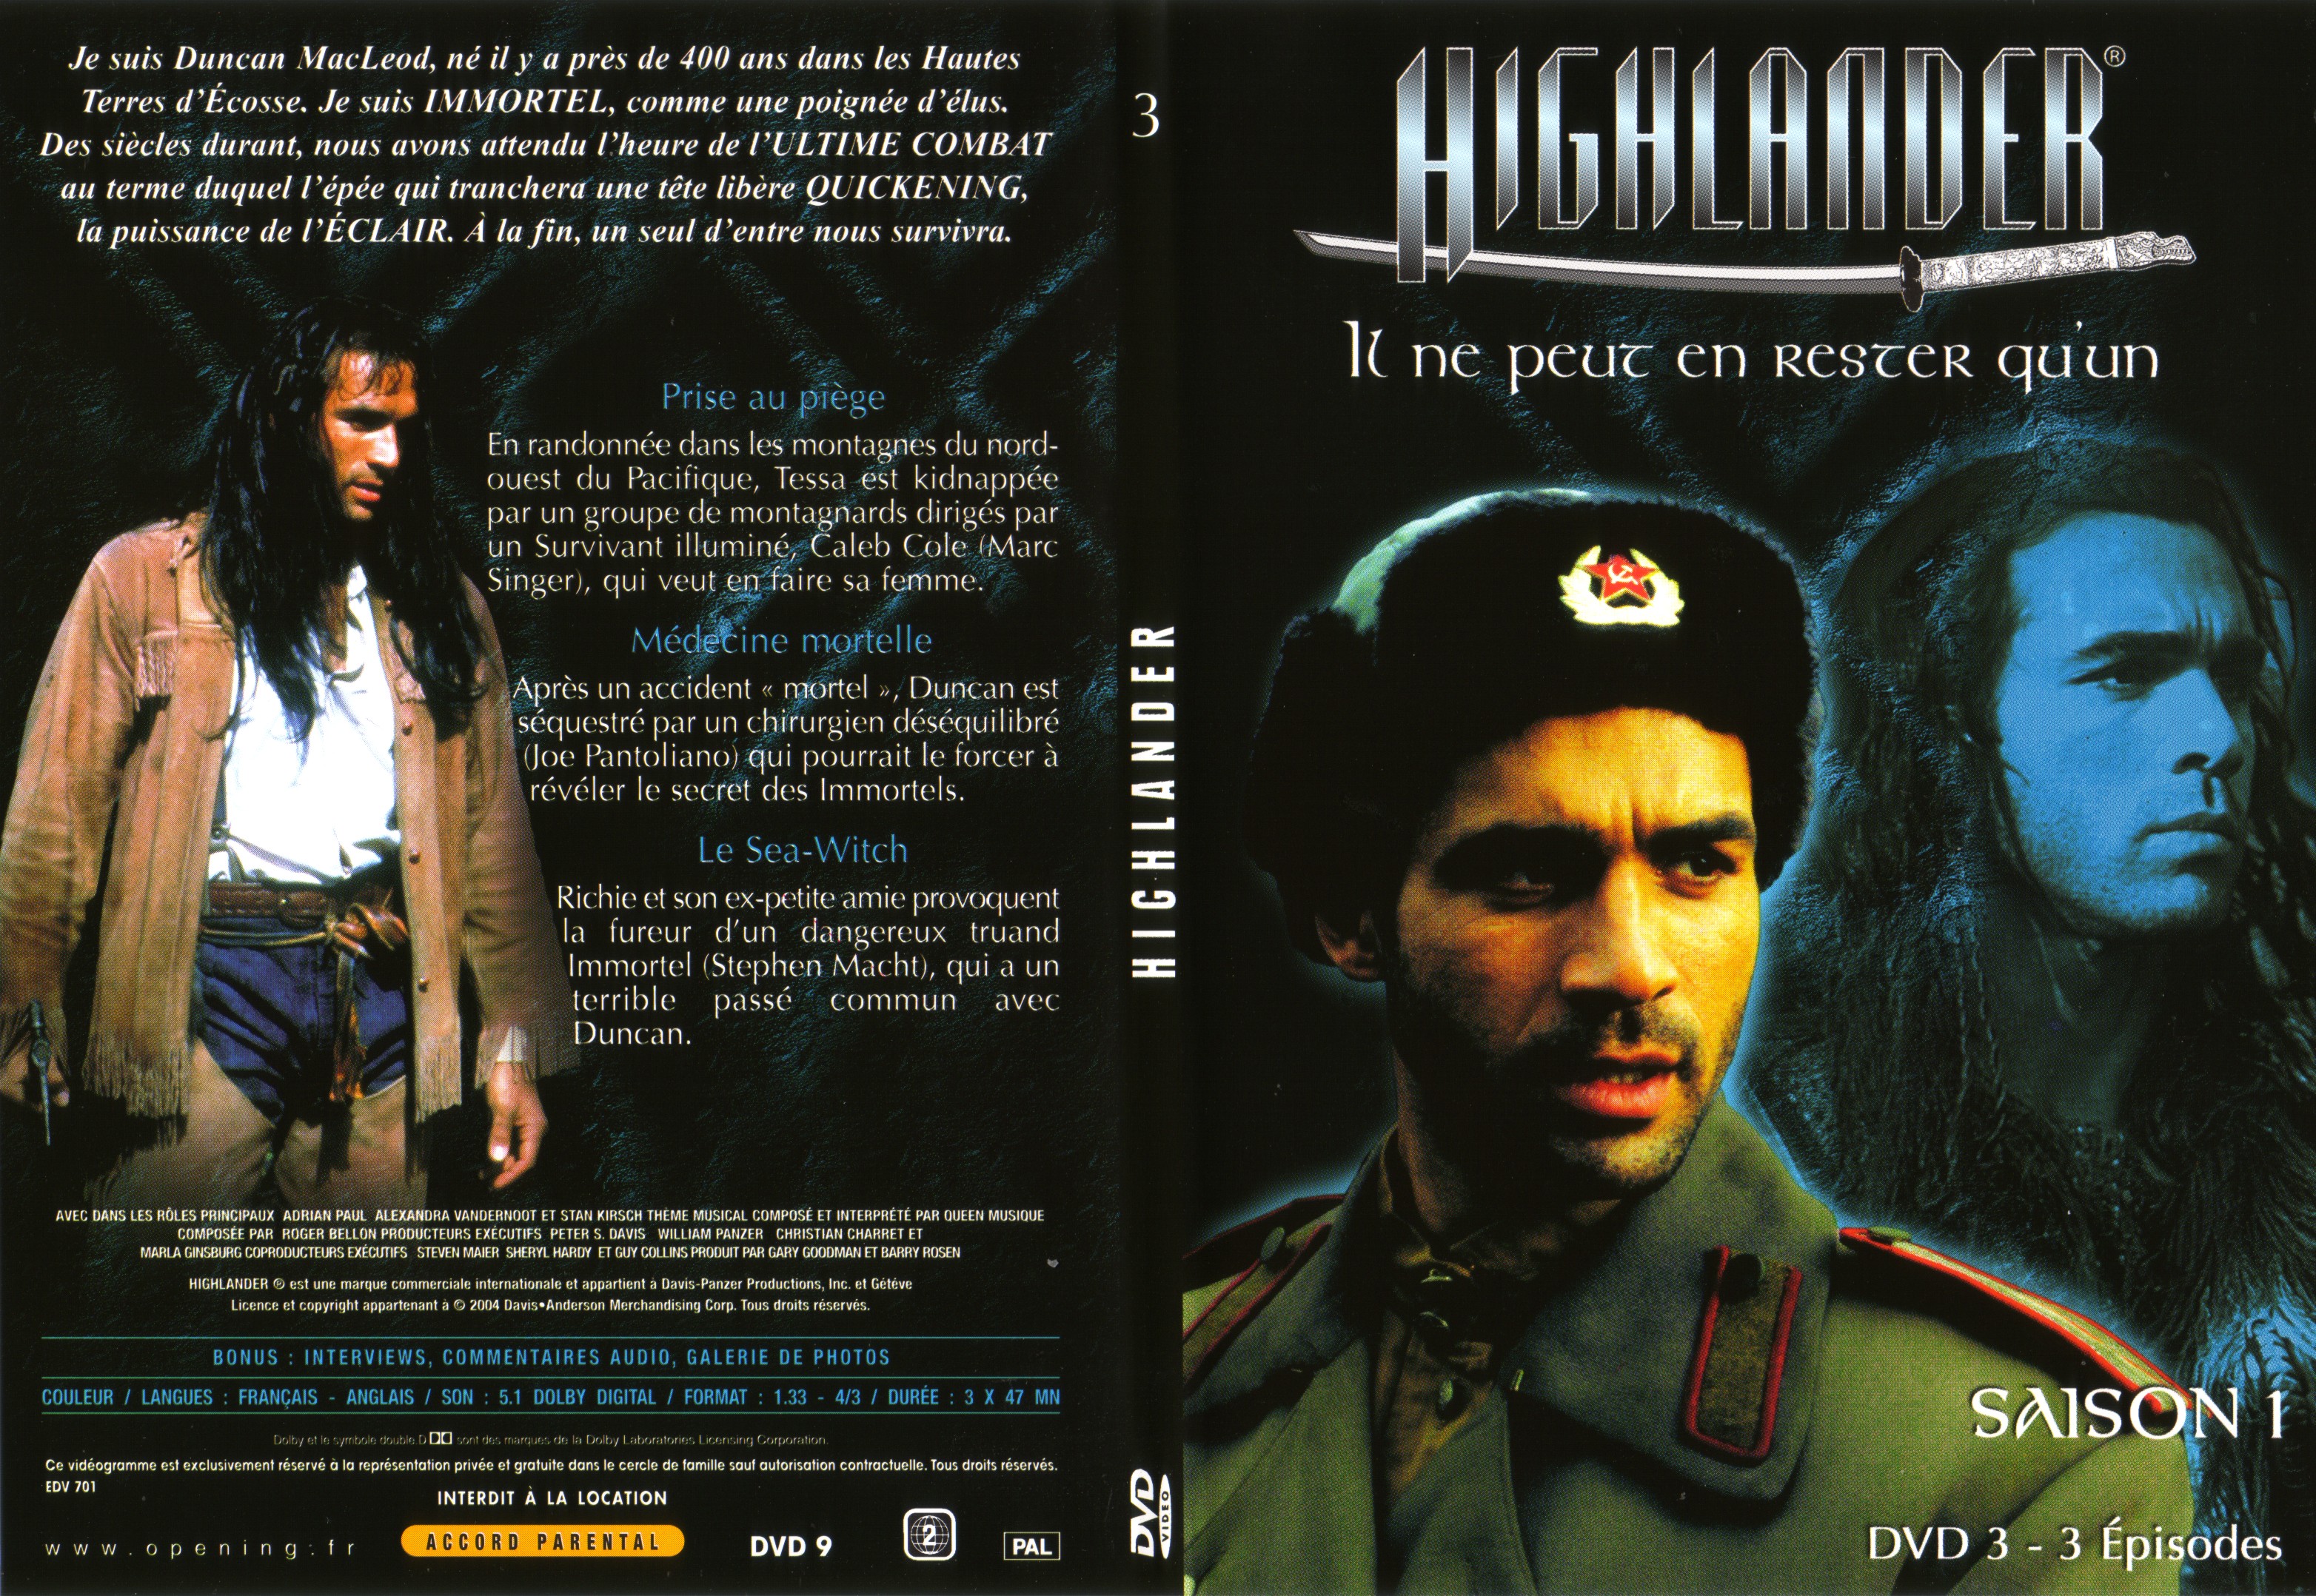 Jaquette DVD Highlander saison 1 DVD 3